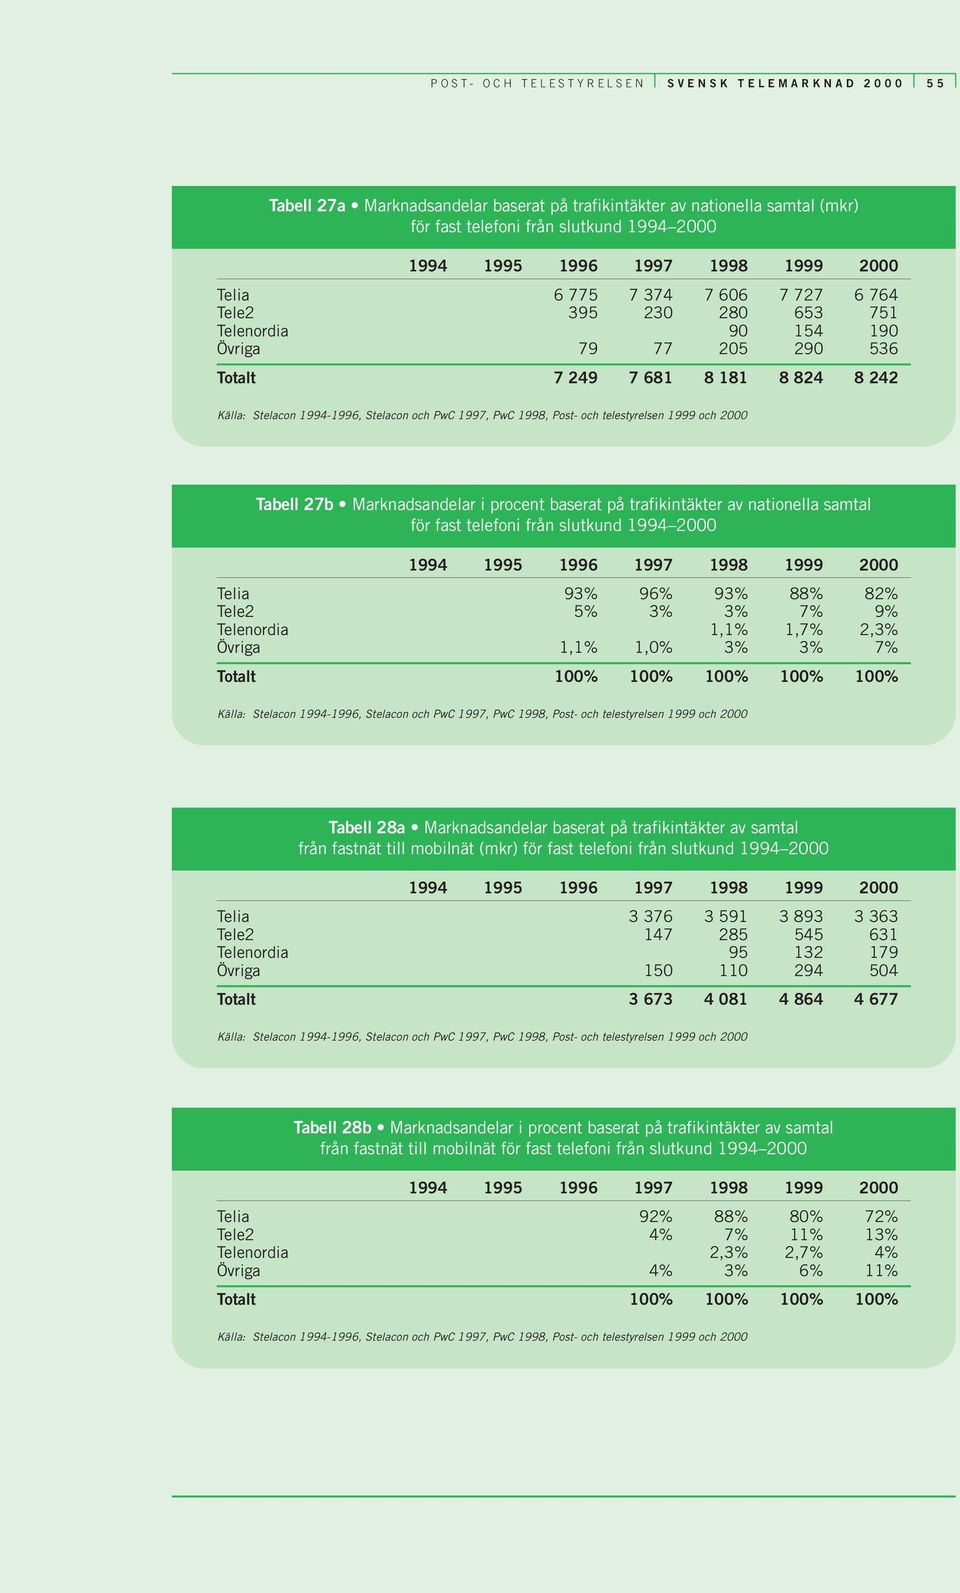 samtal för fast telefoni från slutkund 1994 2000 Telia 93% 96% 93% 88% 82% Tele2 5% 3% 3% 7% 9% Telenordia 1,1% 1,7% 2,3% Övriga 1,1% 1,0% 3% 3% 7% Totalt 100% 100% 100% 100% 100% Tabell 28a